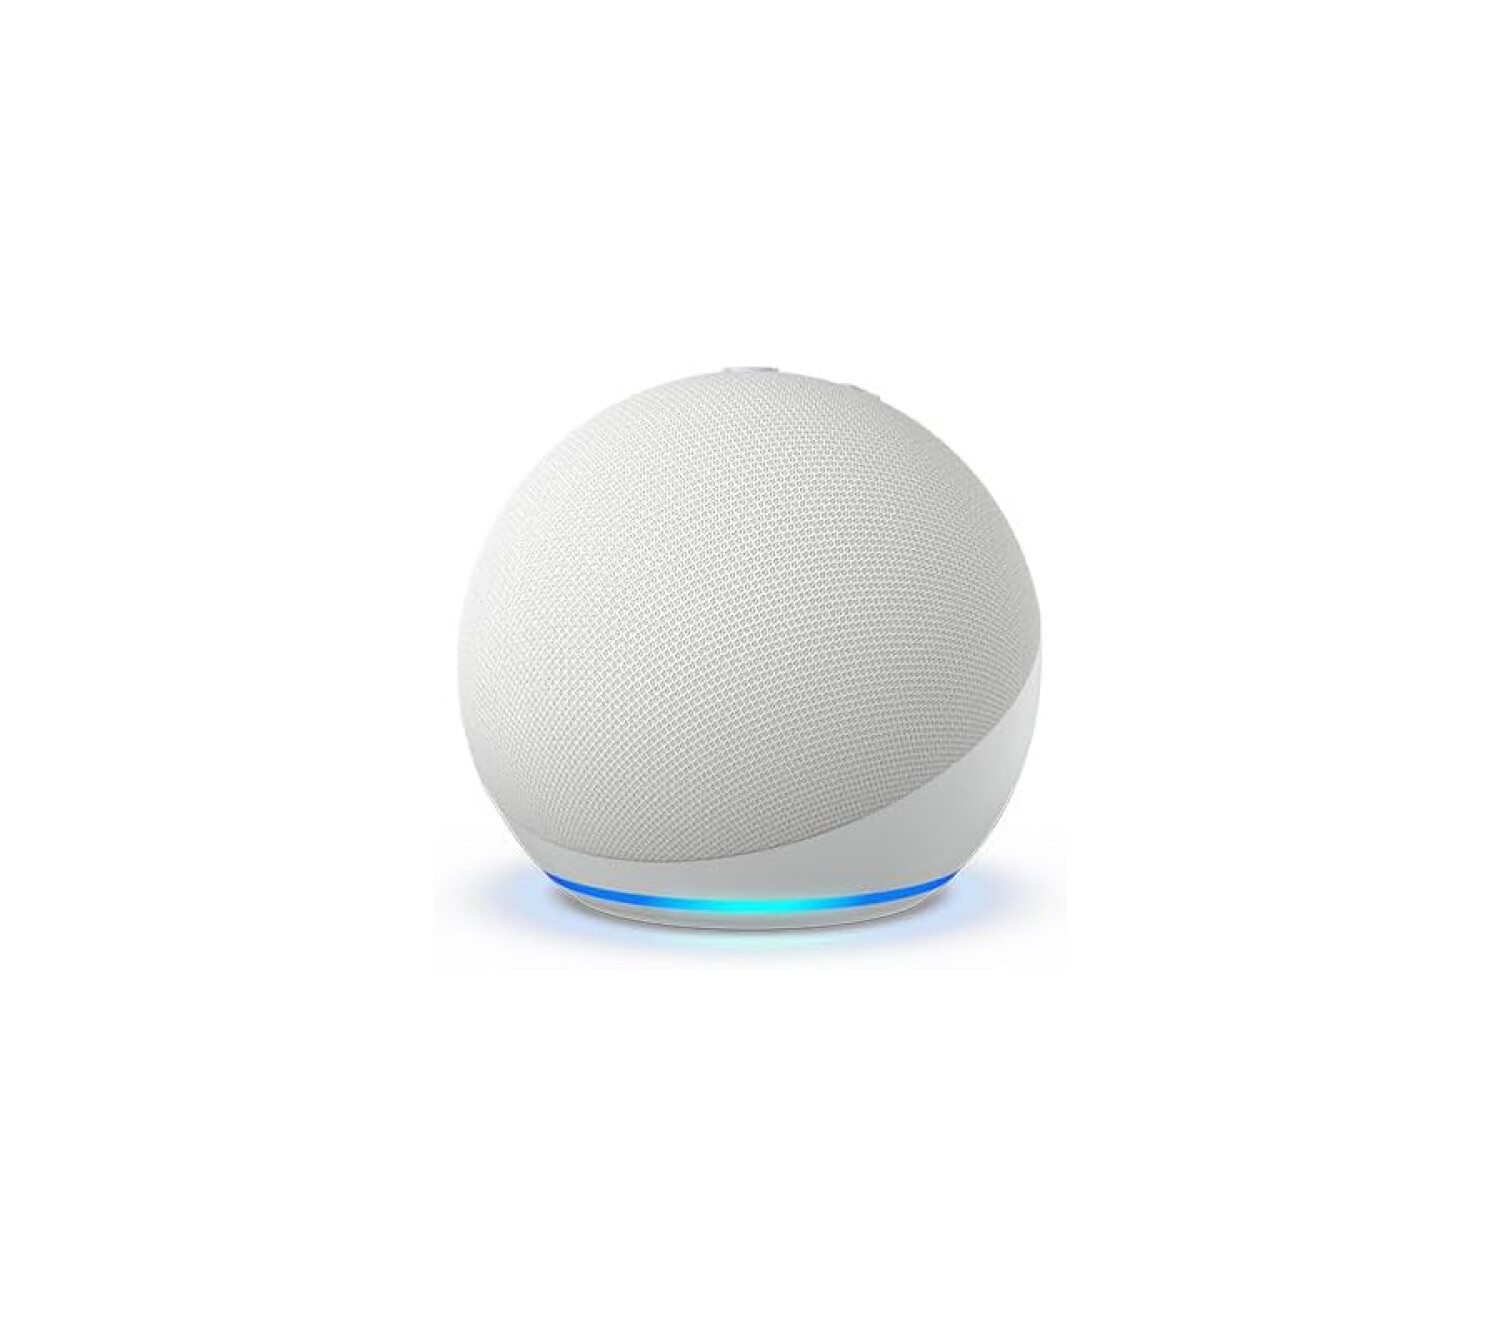 Echo Dot Alexa 5ta Generación / Blanco